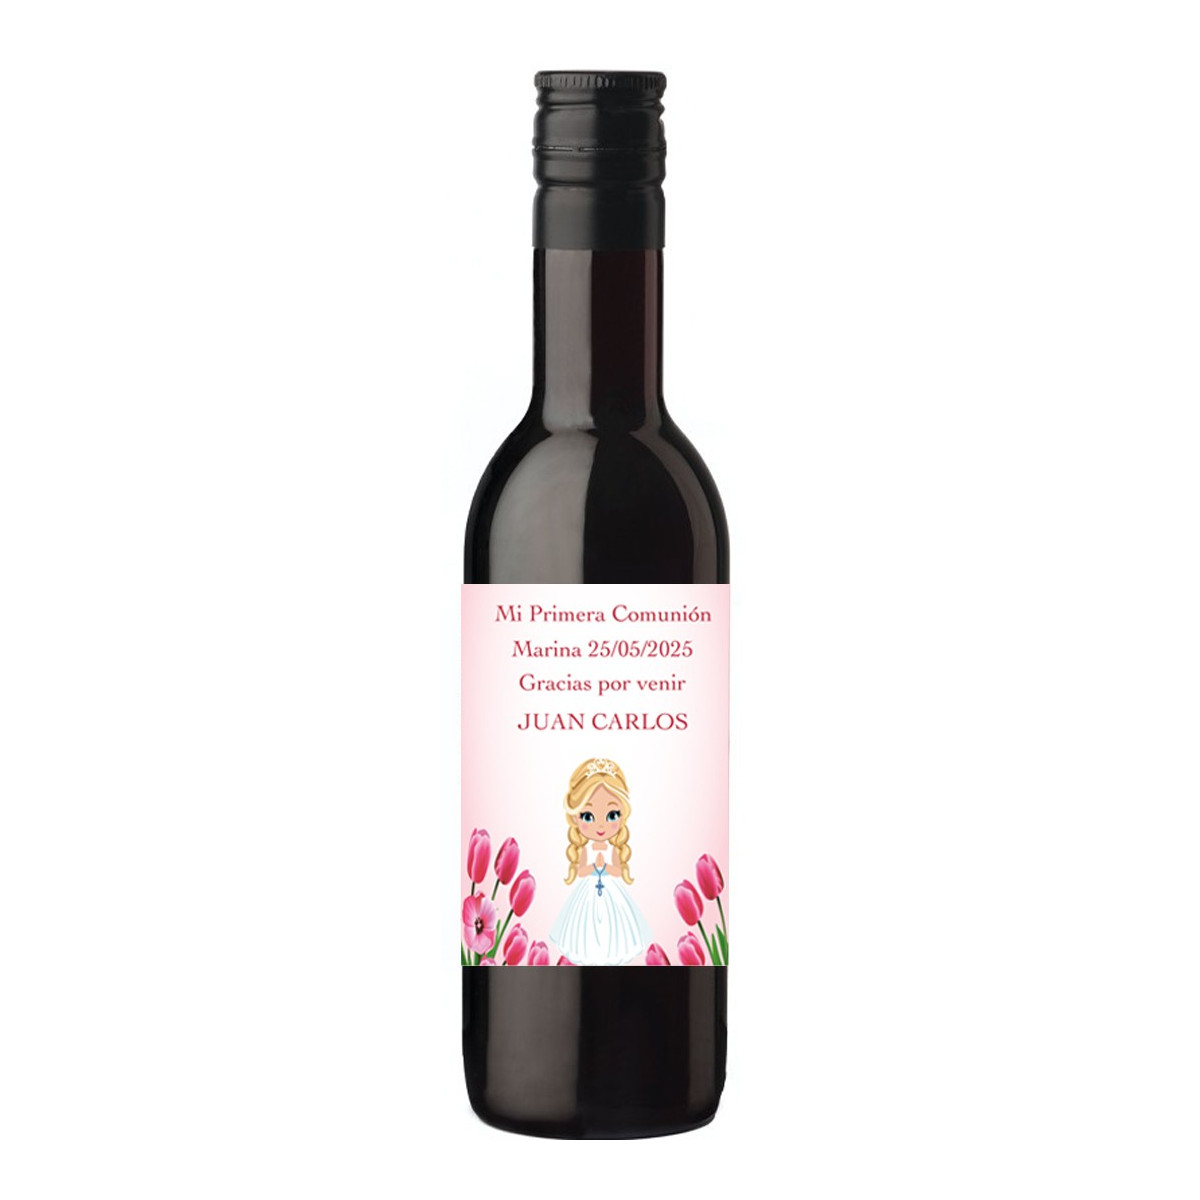 Garrafa de vinho de comunhão personalizada com nome do convidado e menina da comunhão